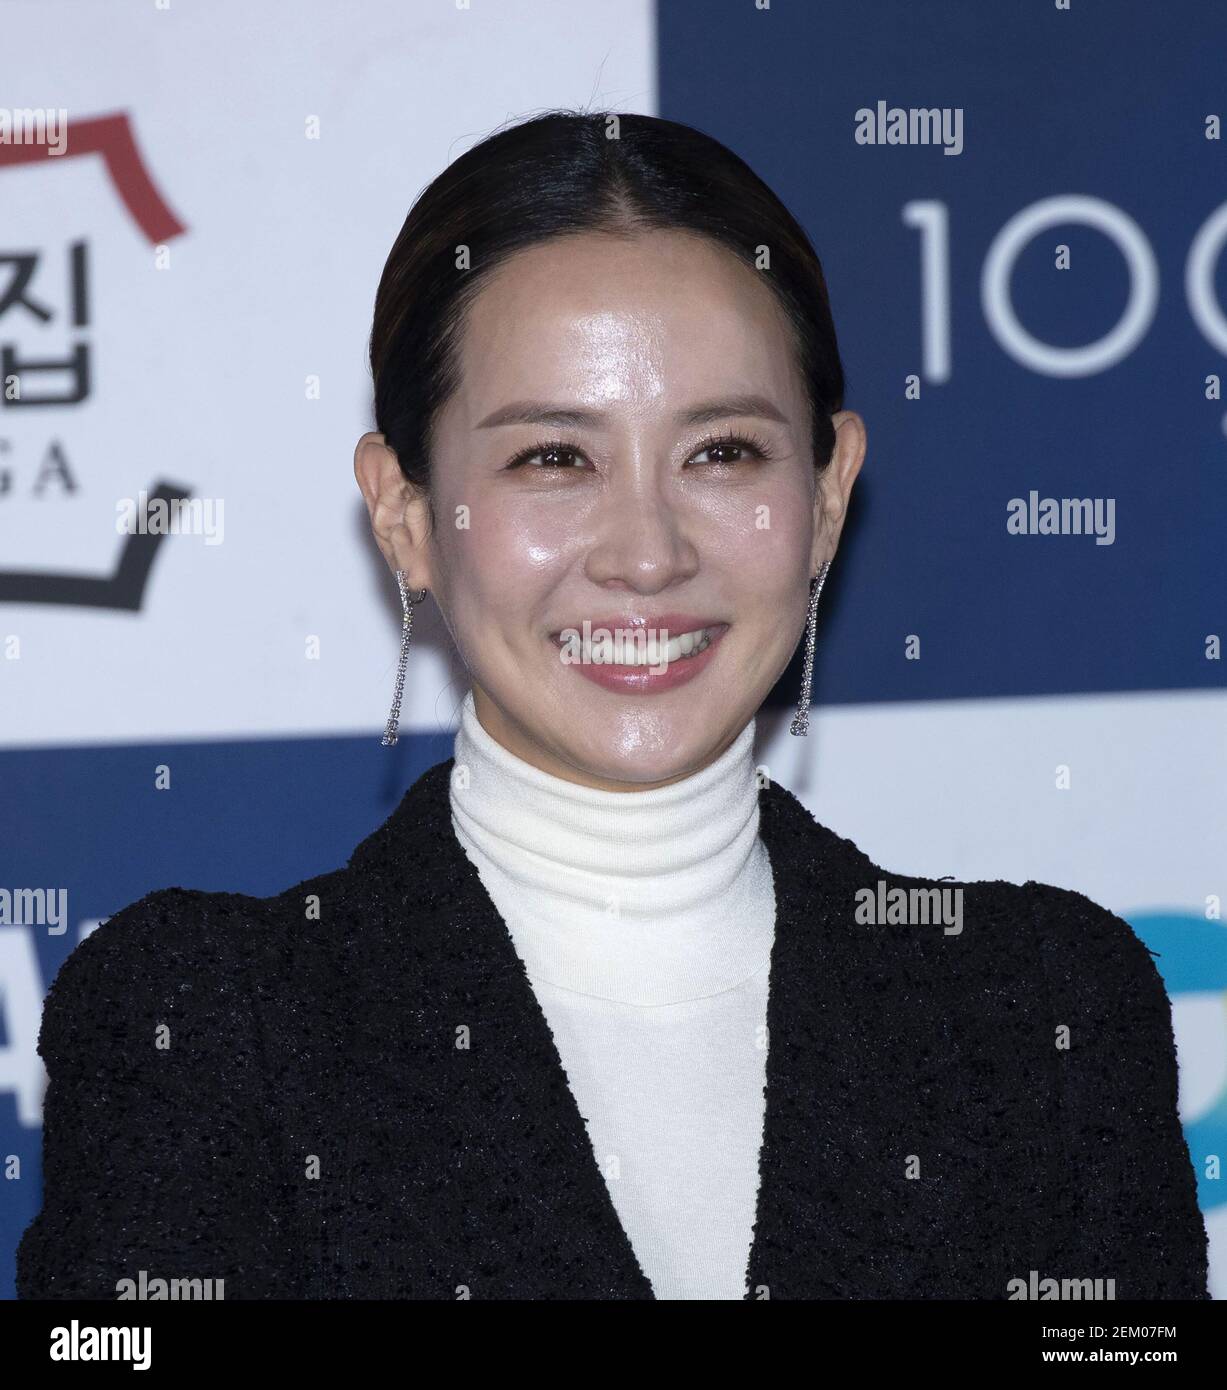 12 de noviembre de 2020 - Seúl, Corea del Sur: La actriz surcoreana Cho Yeo-jeong, asiste a un evento de impresión de manos para los '41st Blue Dragon Film Awards' en CGV Cinema en Seúl, Corea del Sur el 12 de noviembre de 2020. (Foto de: Lee Young-ho/Sipa USA) Foto de stock